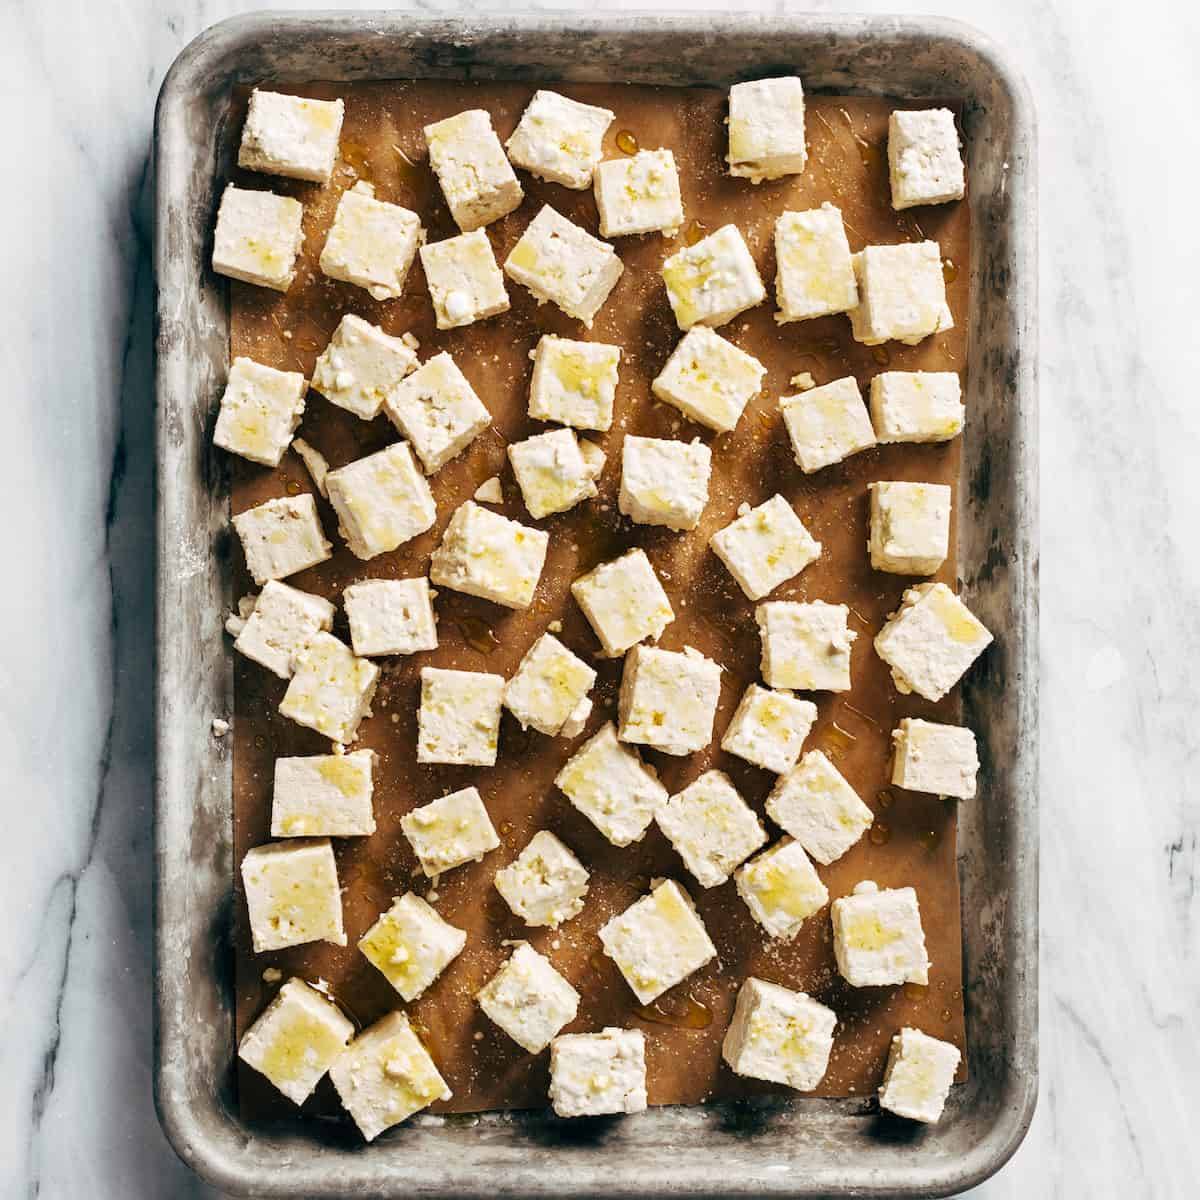 How to Bake Crispy Tofu.